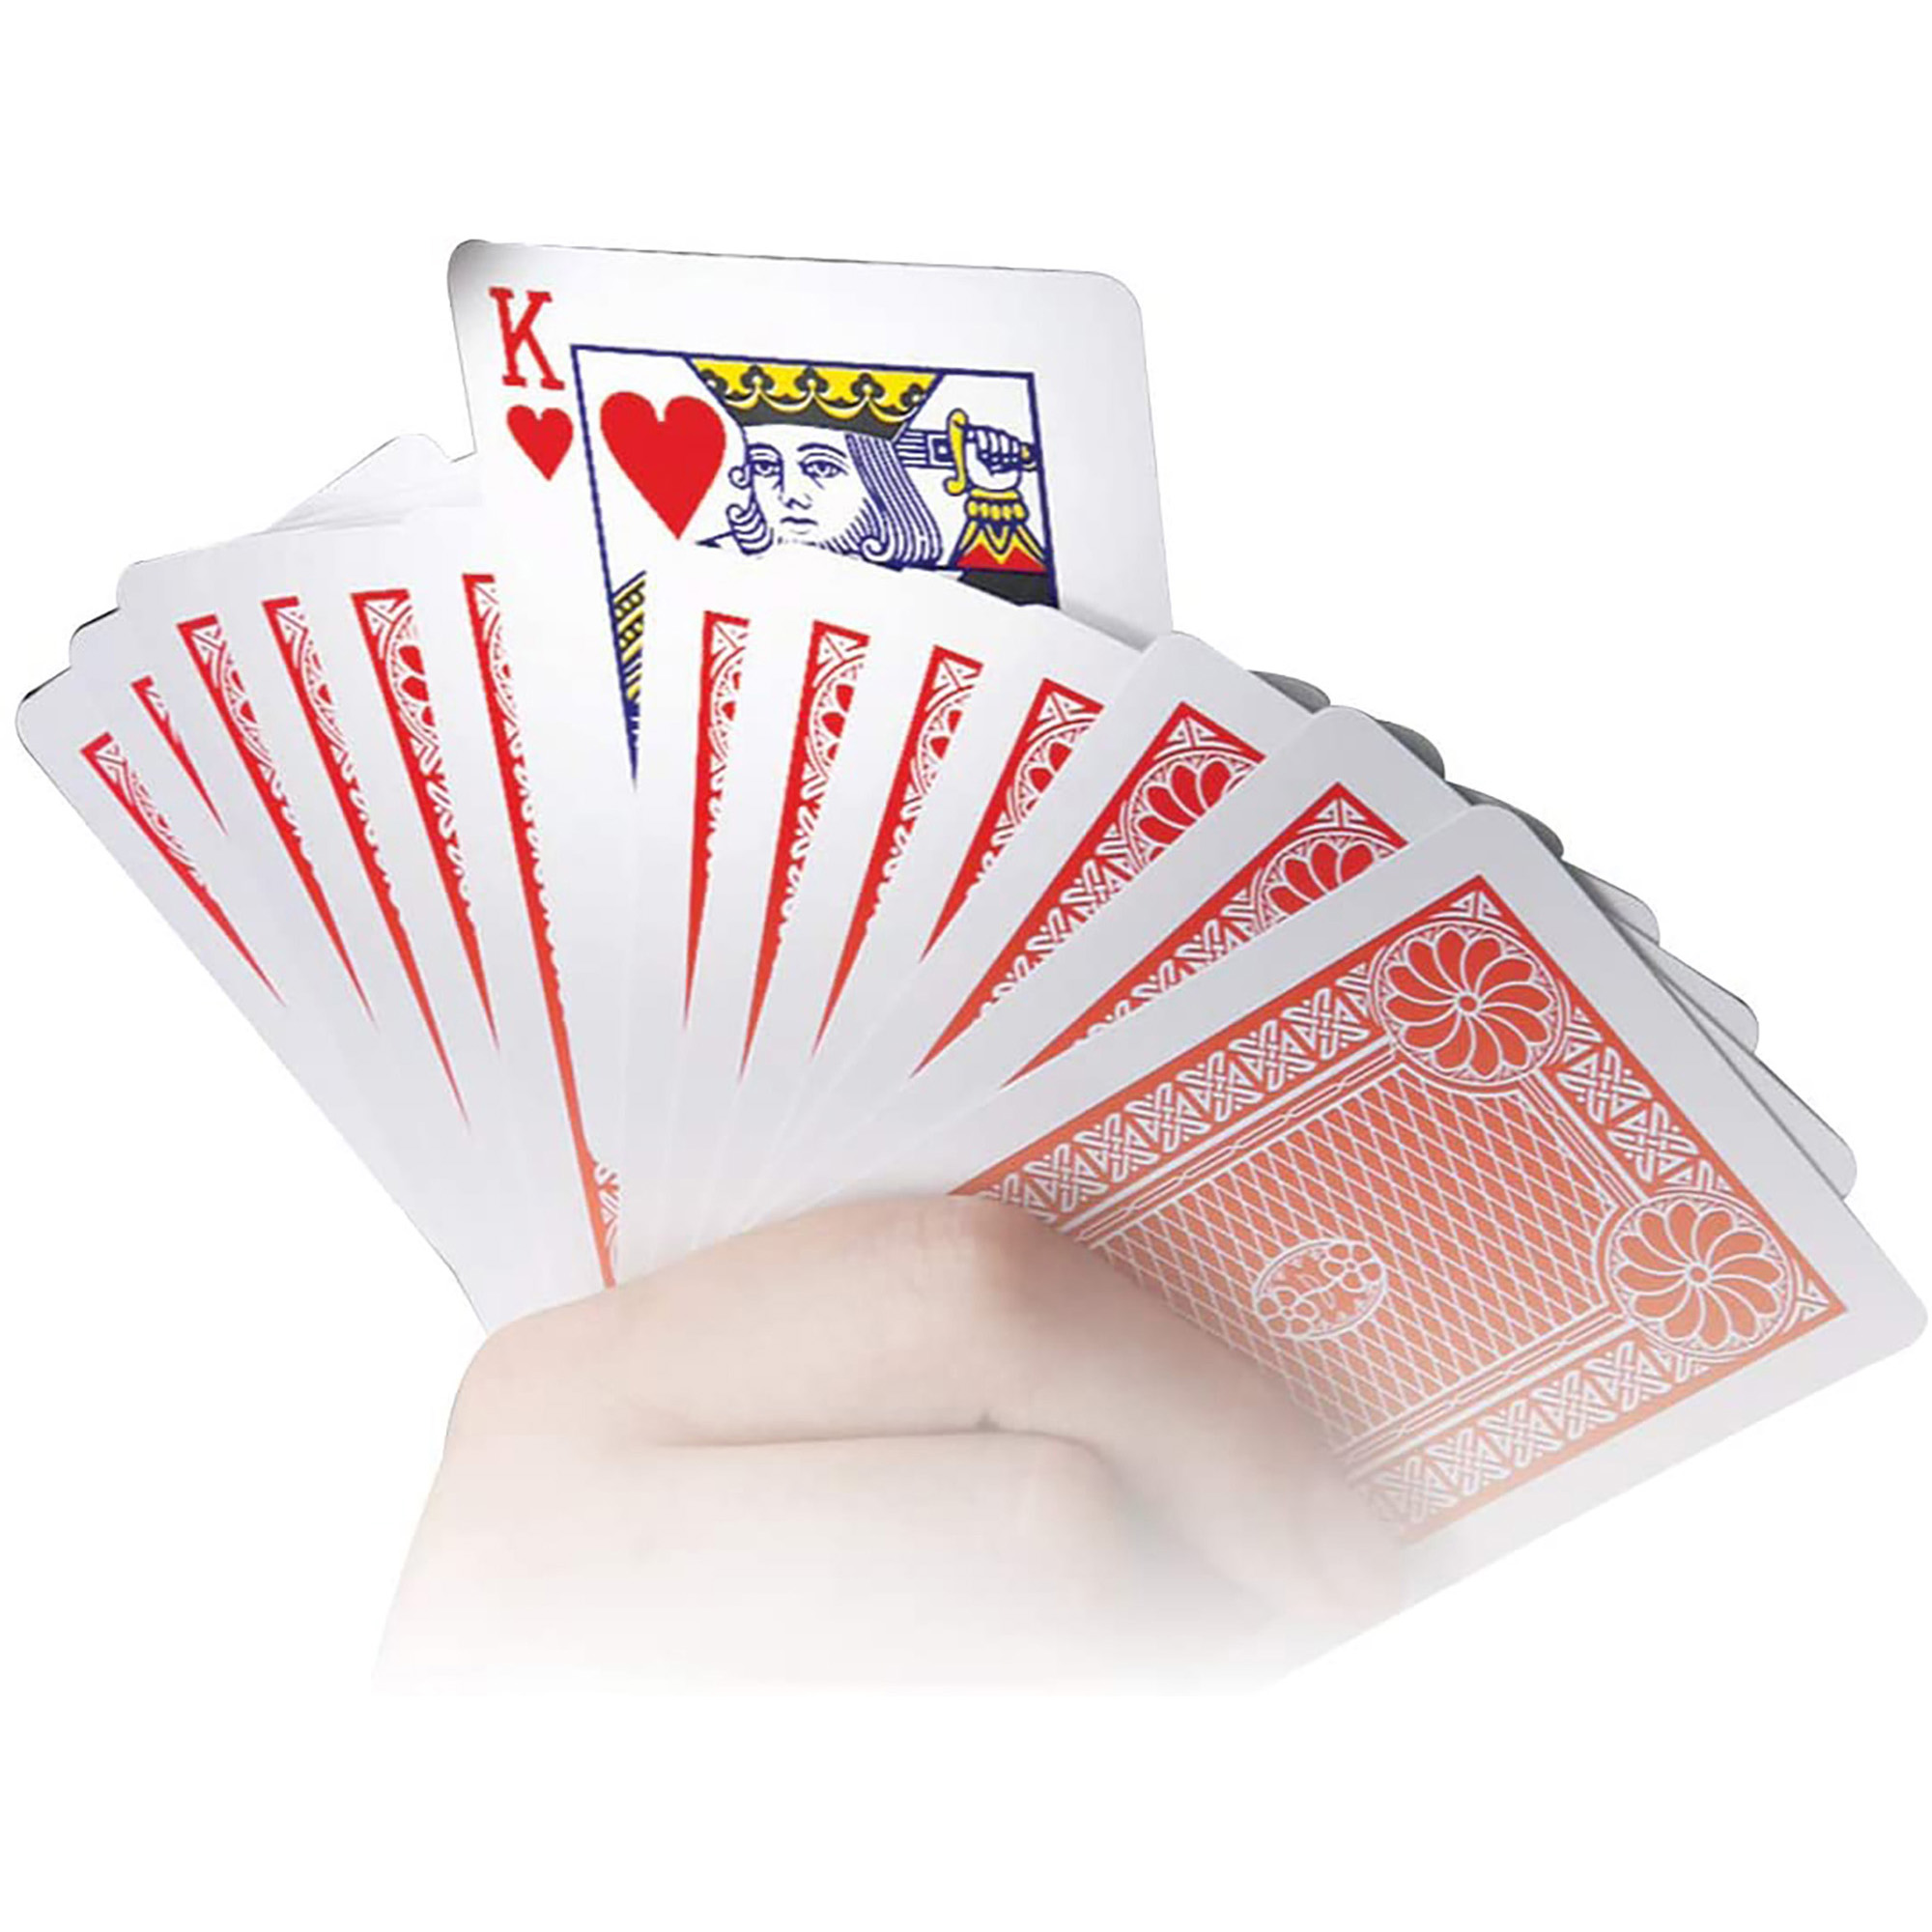 Magia sbalorditiva - 30 incredibili trucchi con le carte - Marvin's Magic